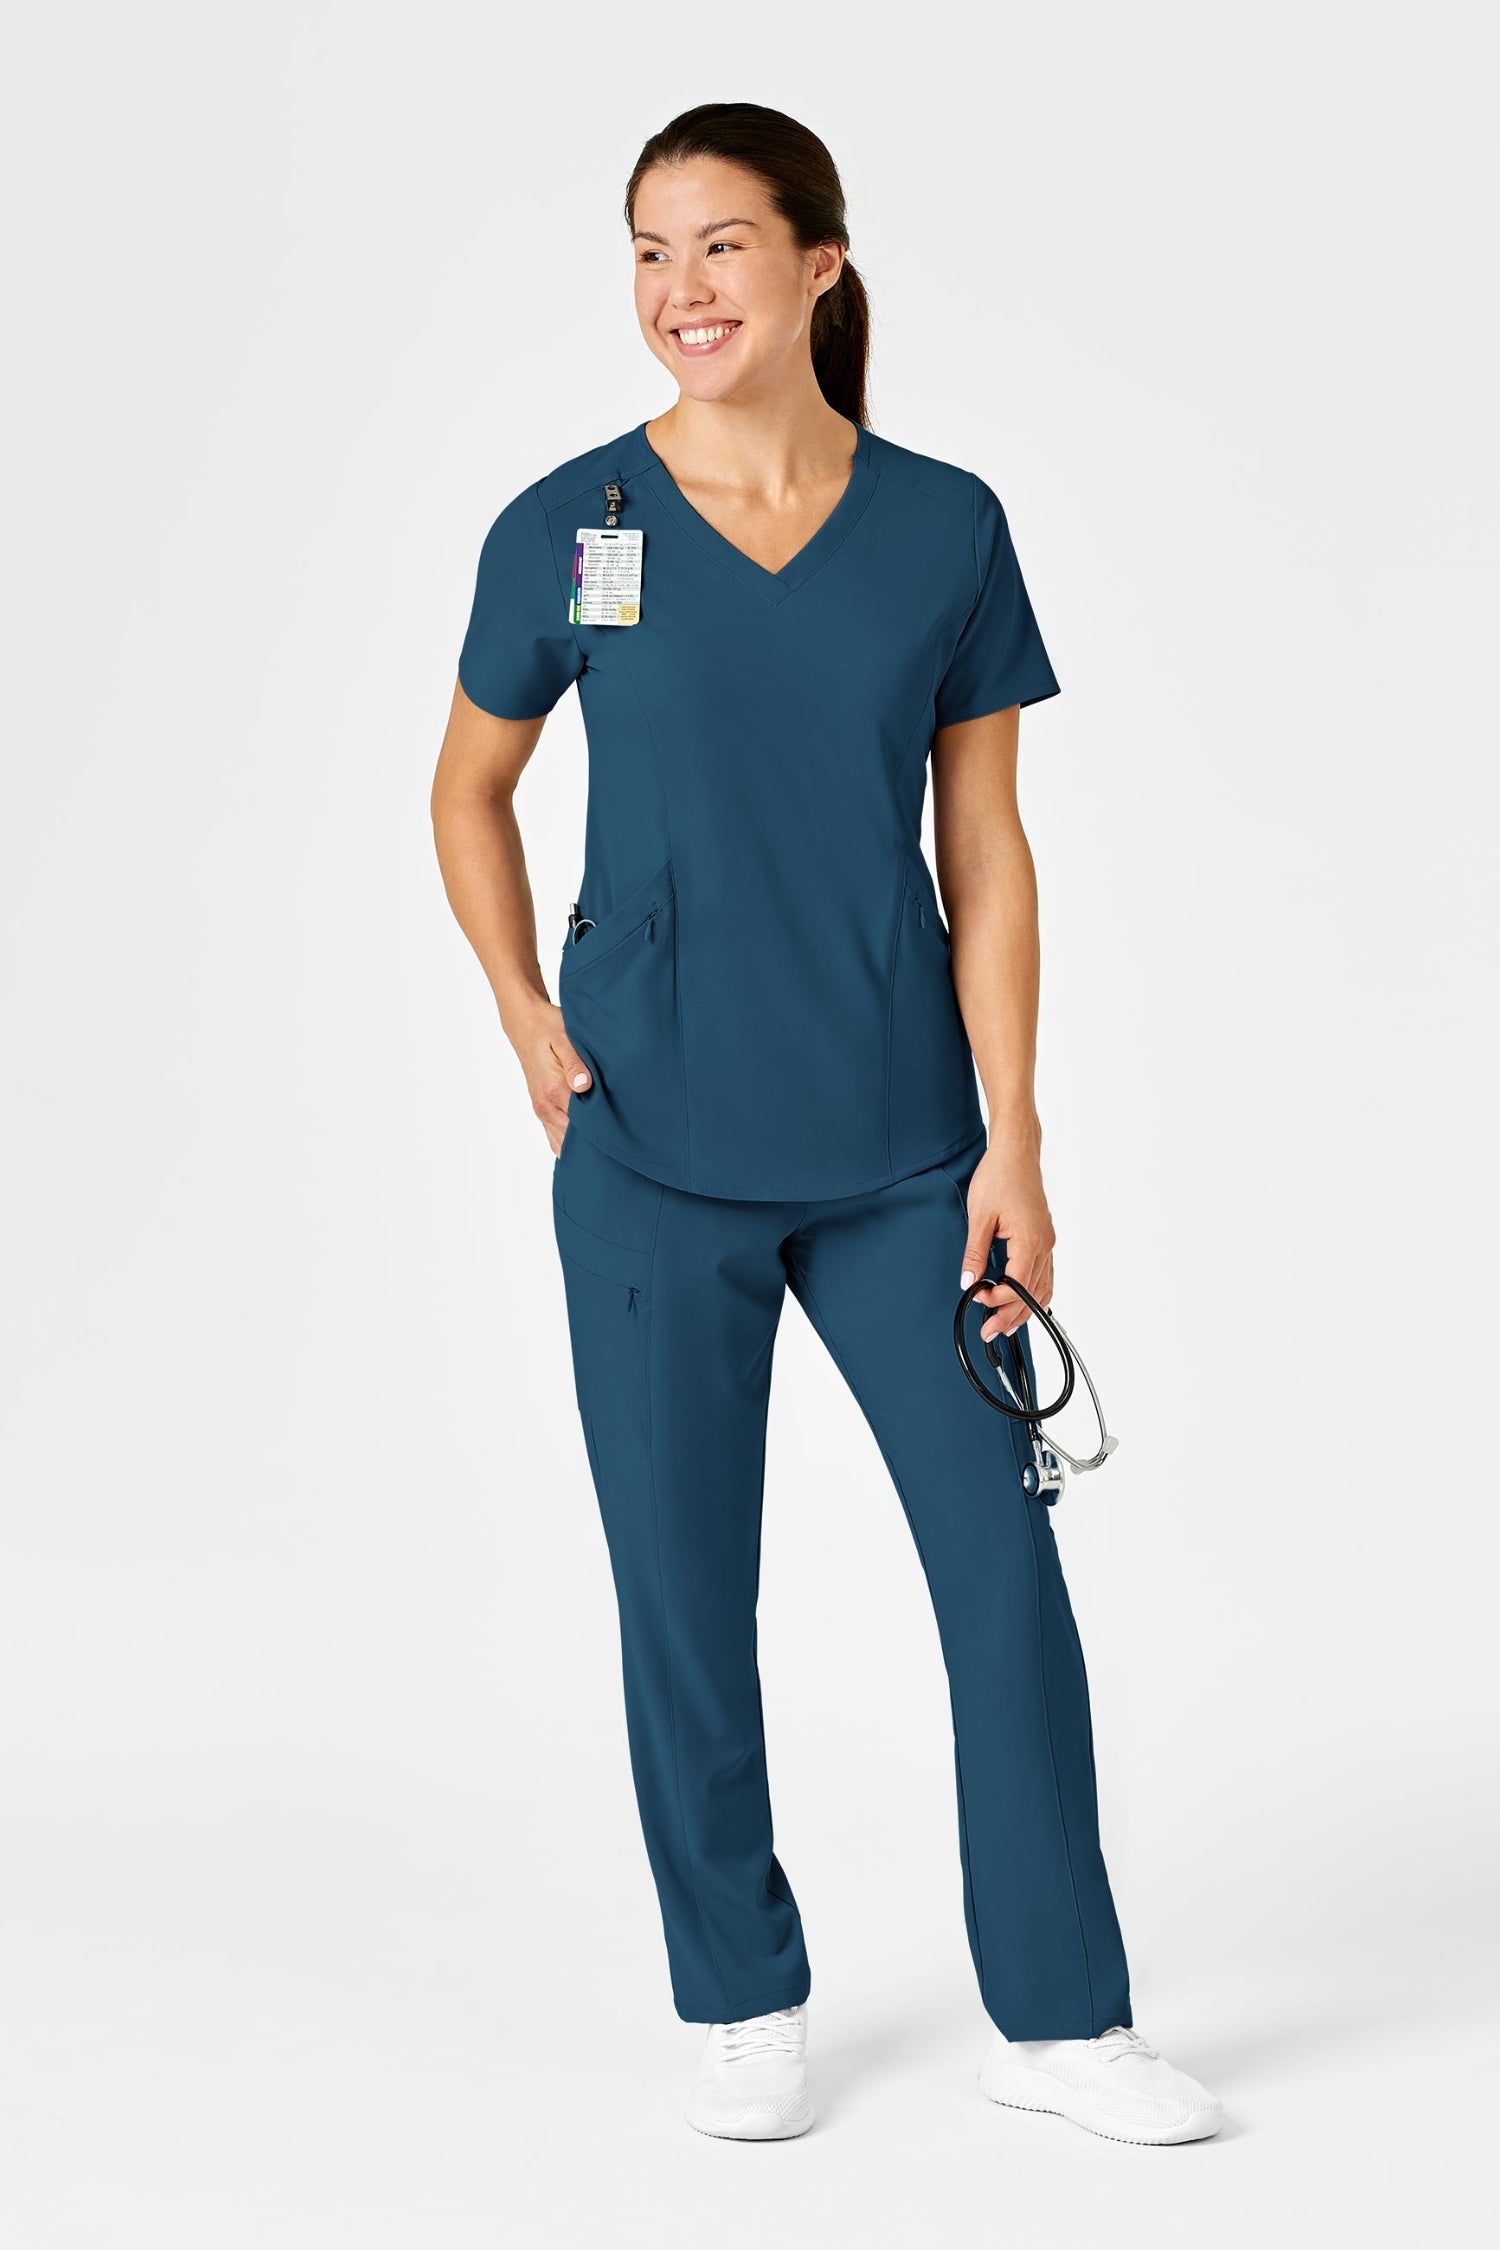 Femme en tenue médicale bleu turquoise avec poches à fermeture en polyester spandex